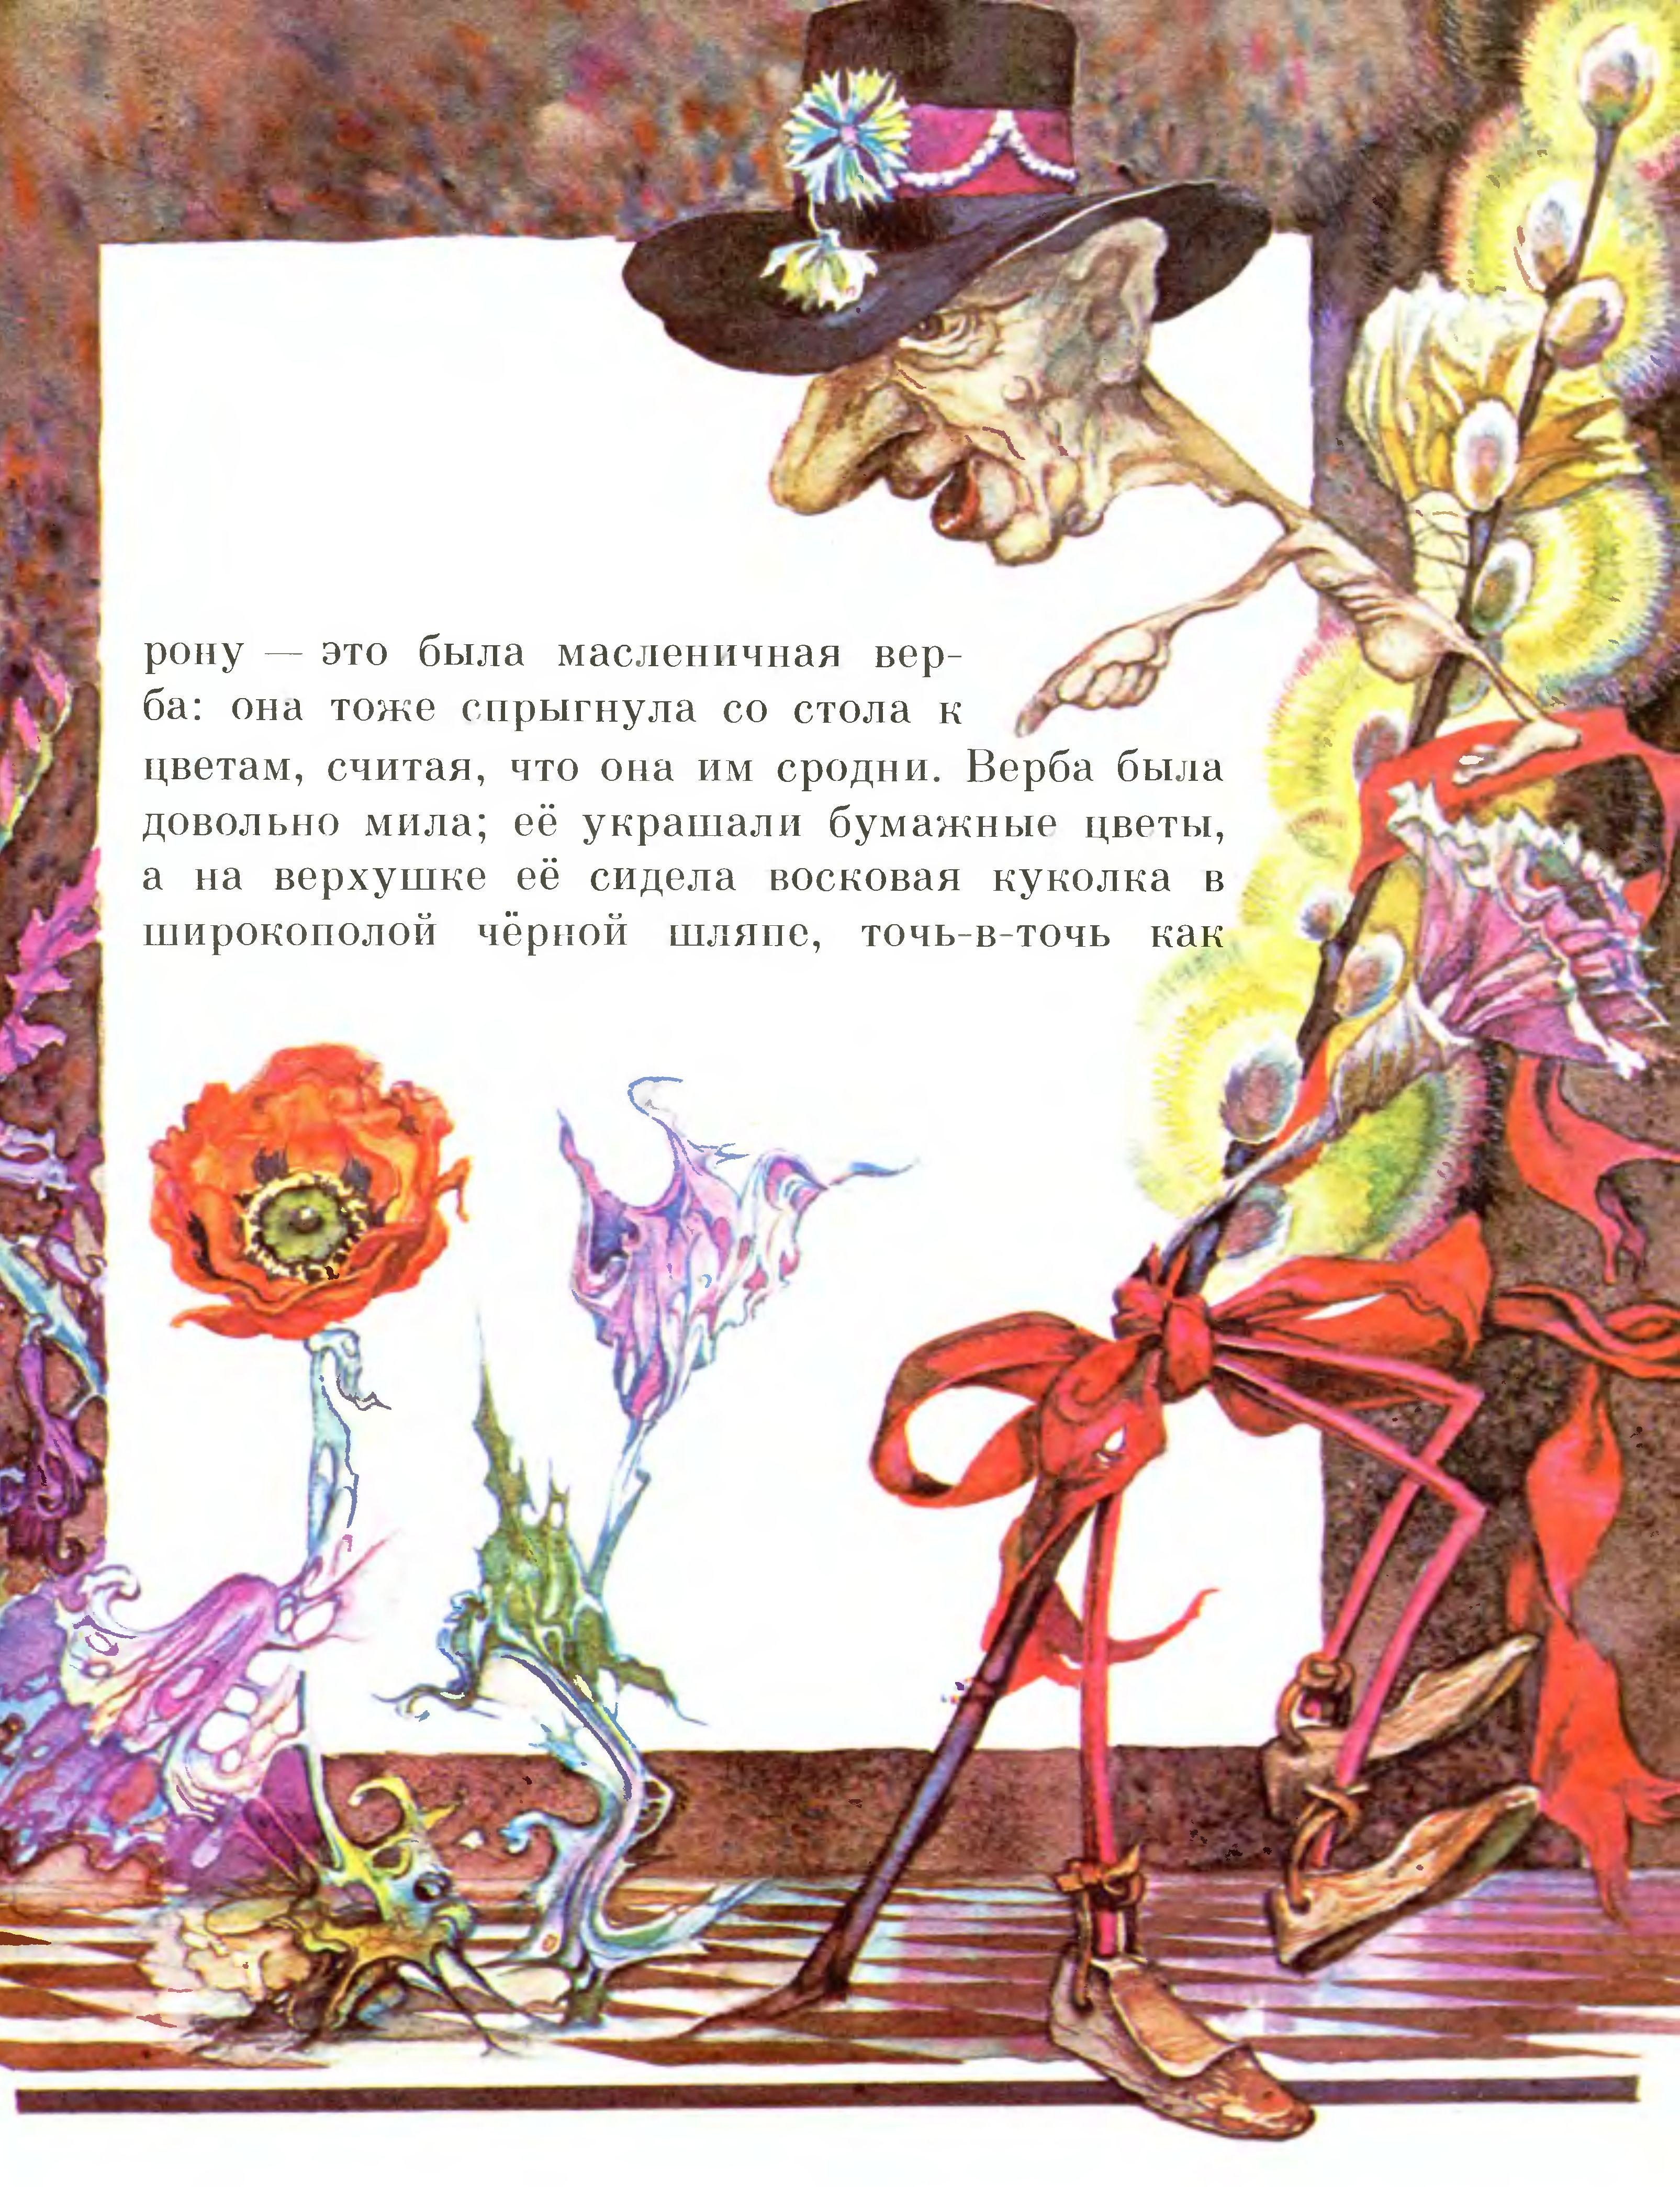 Иллюстрации Андрея Ильина к сказке «Цветы маленькой Иды»